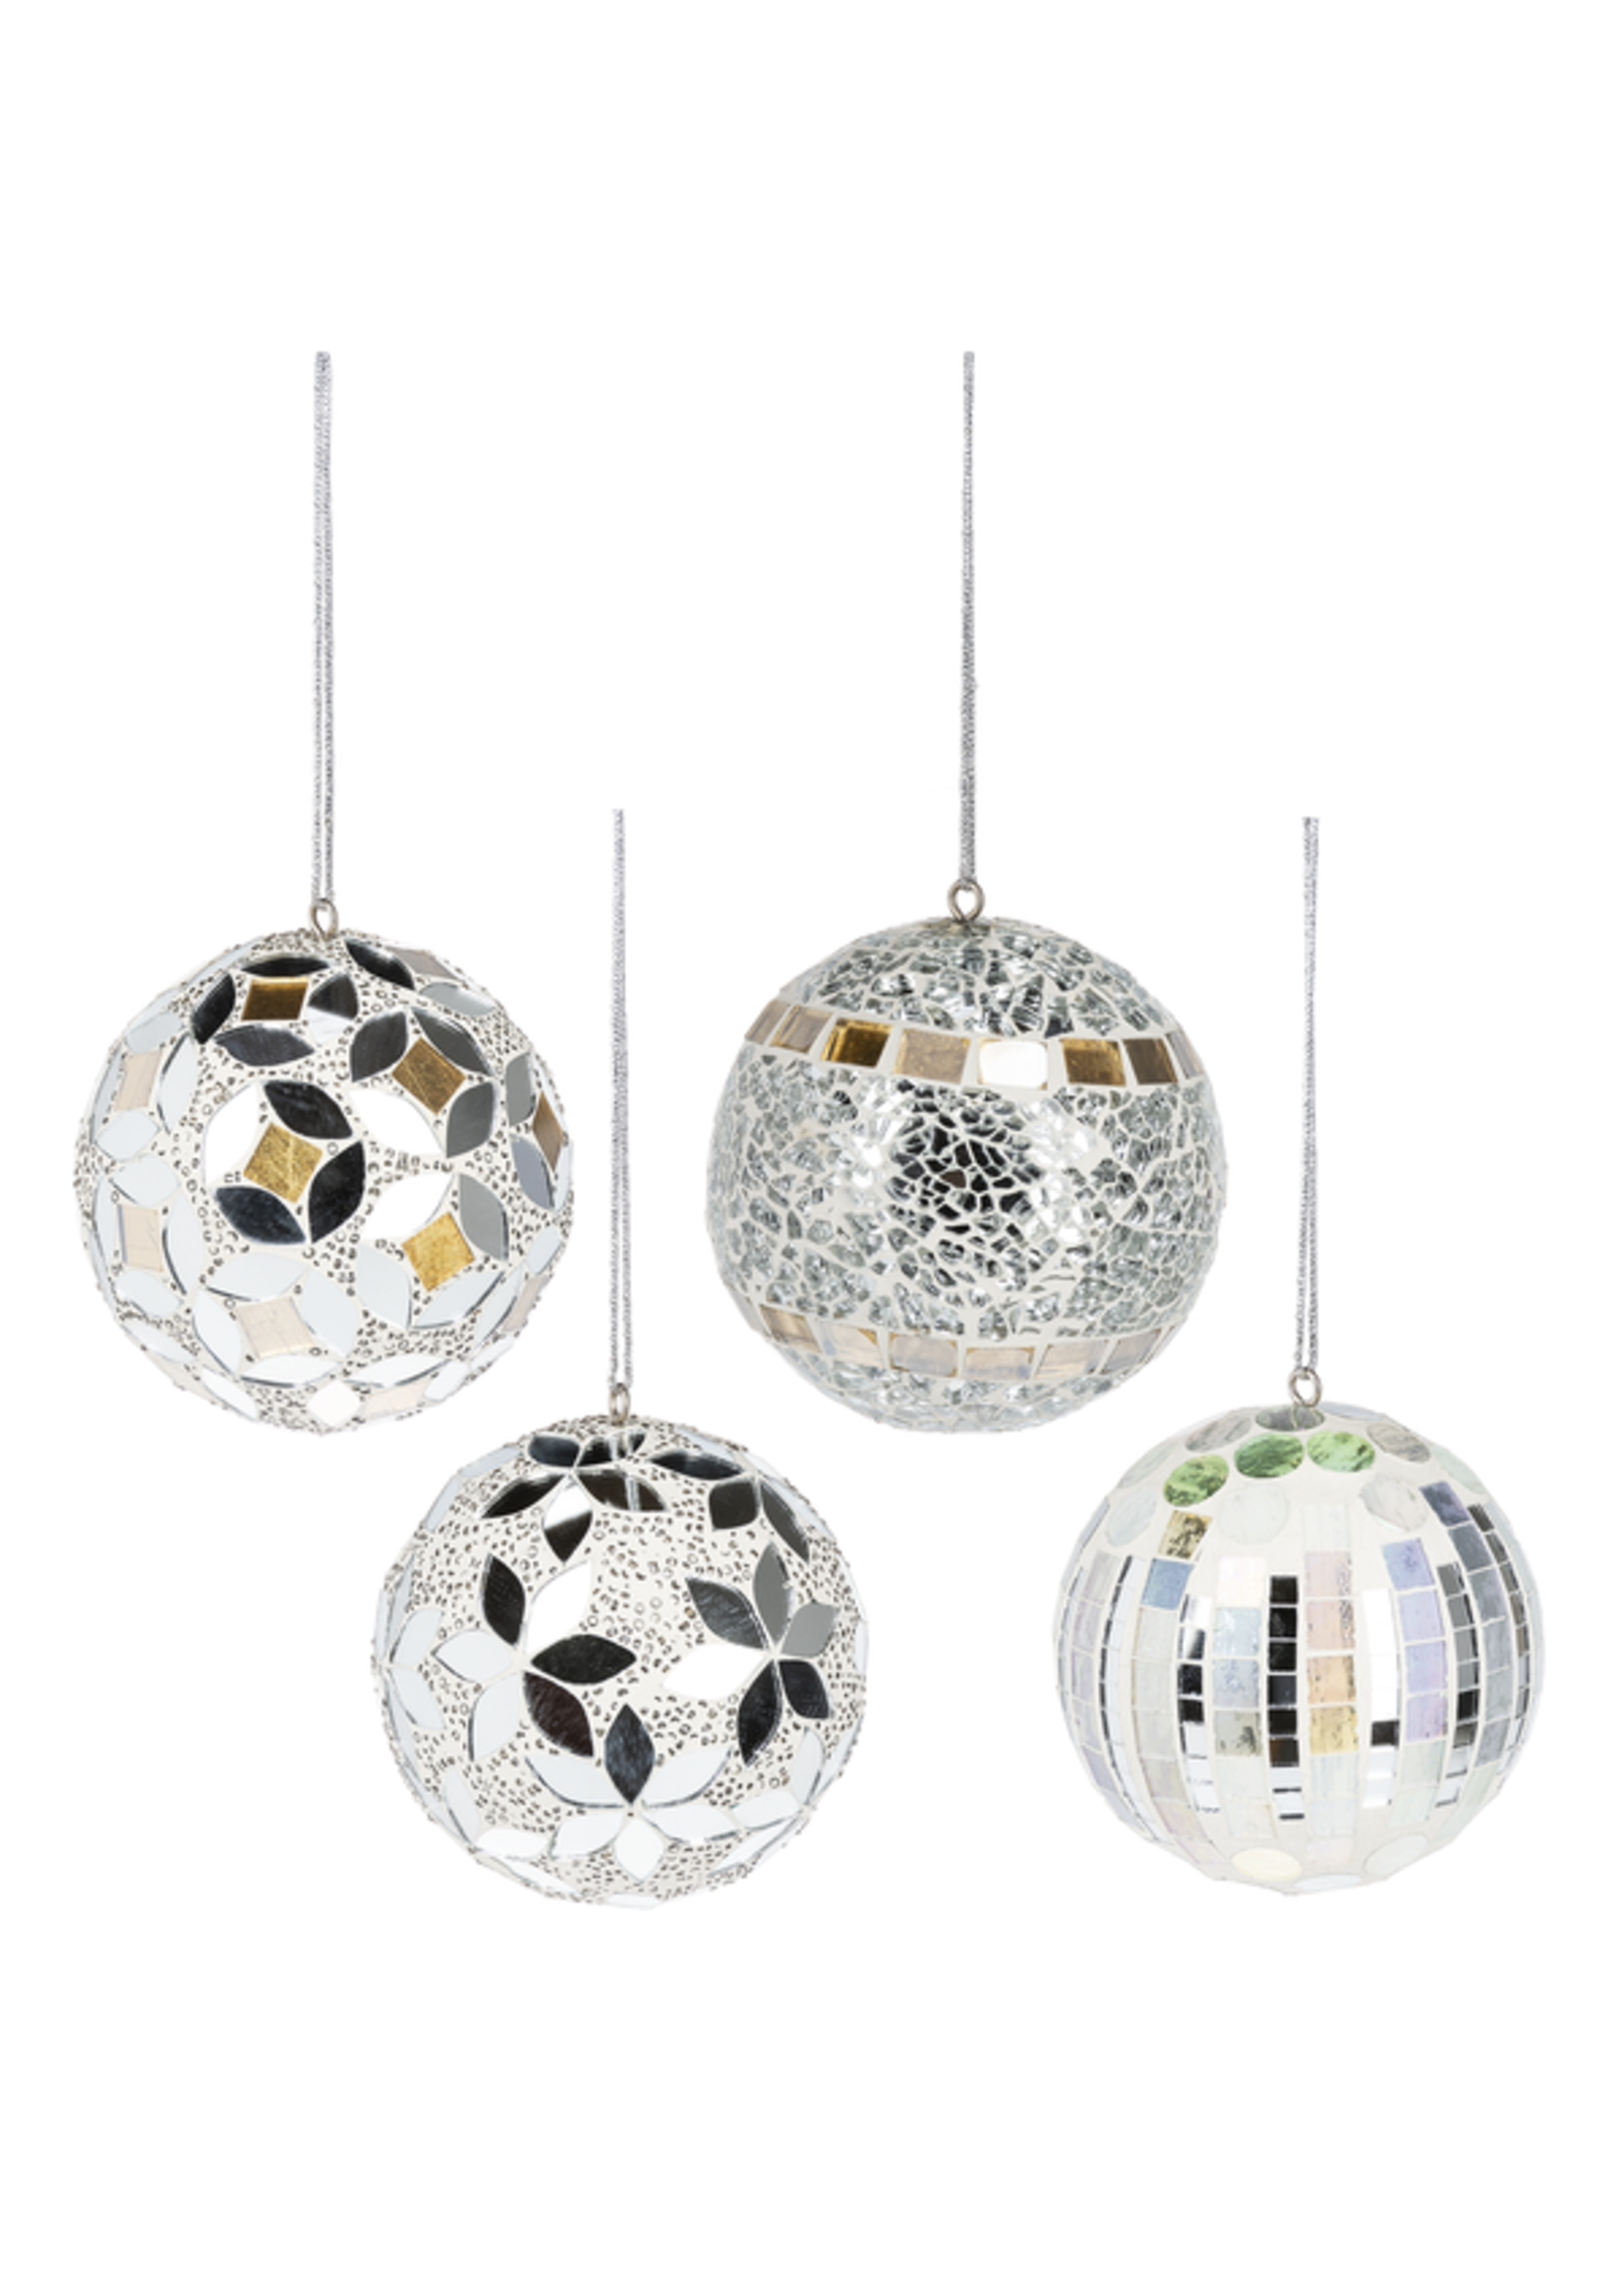 Silver Mosaic Ball Ornaments - Small ( price per piece)